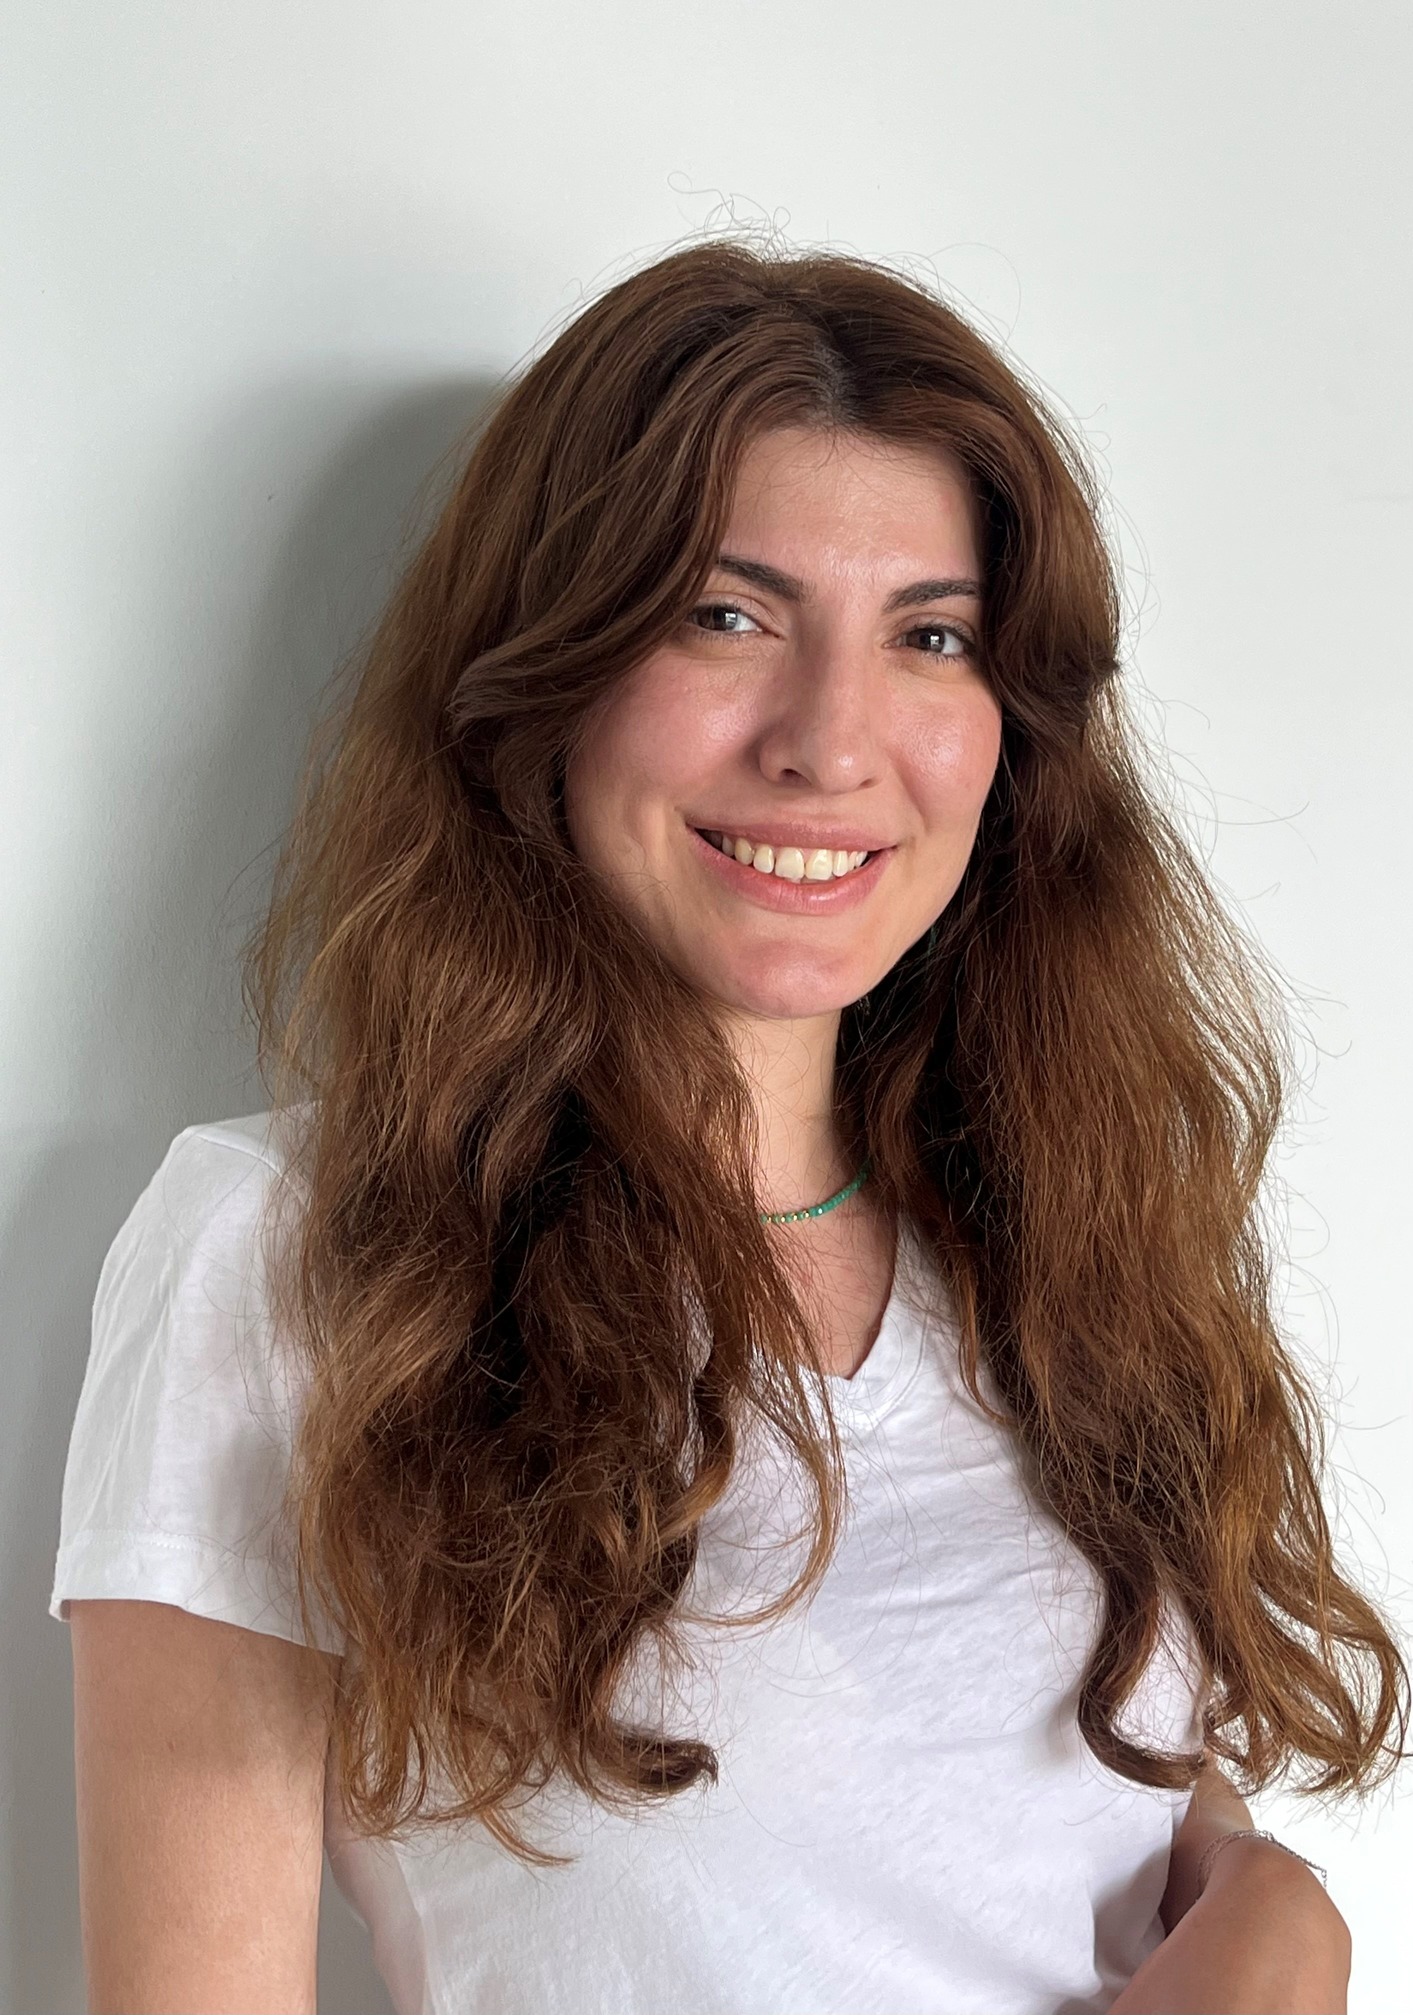 New colleague: Subana Akhmedova